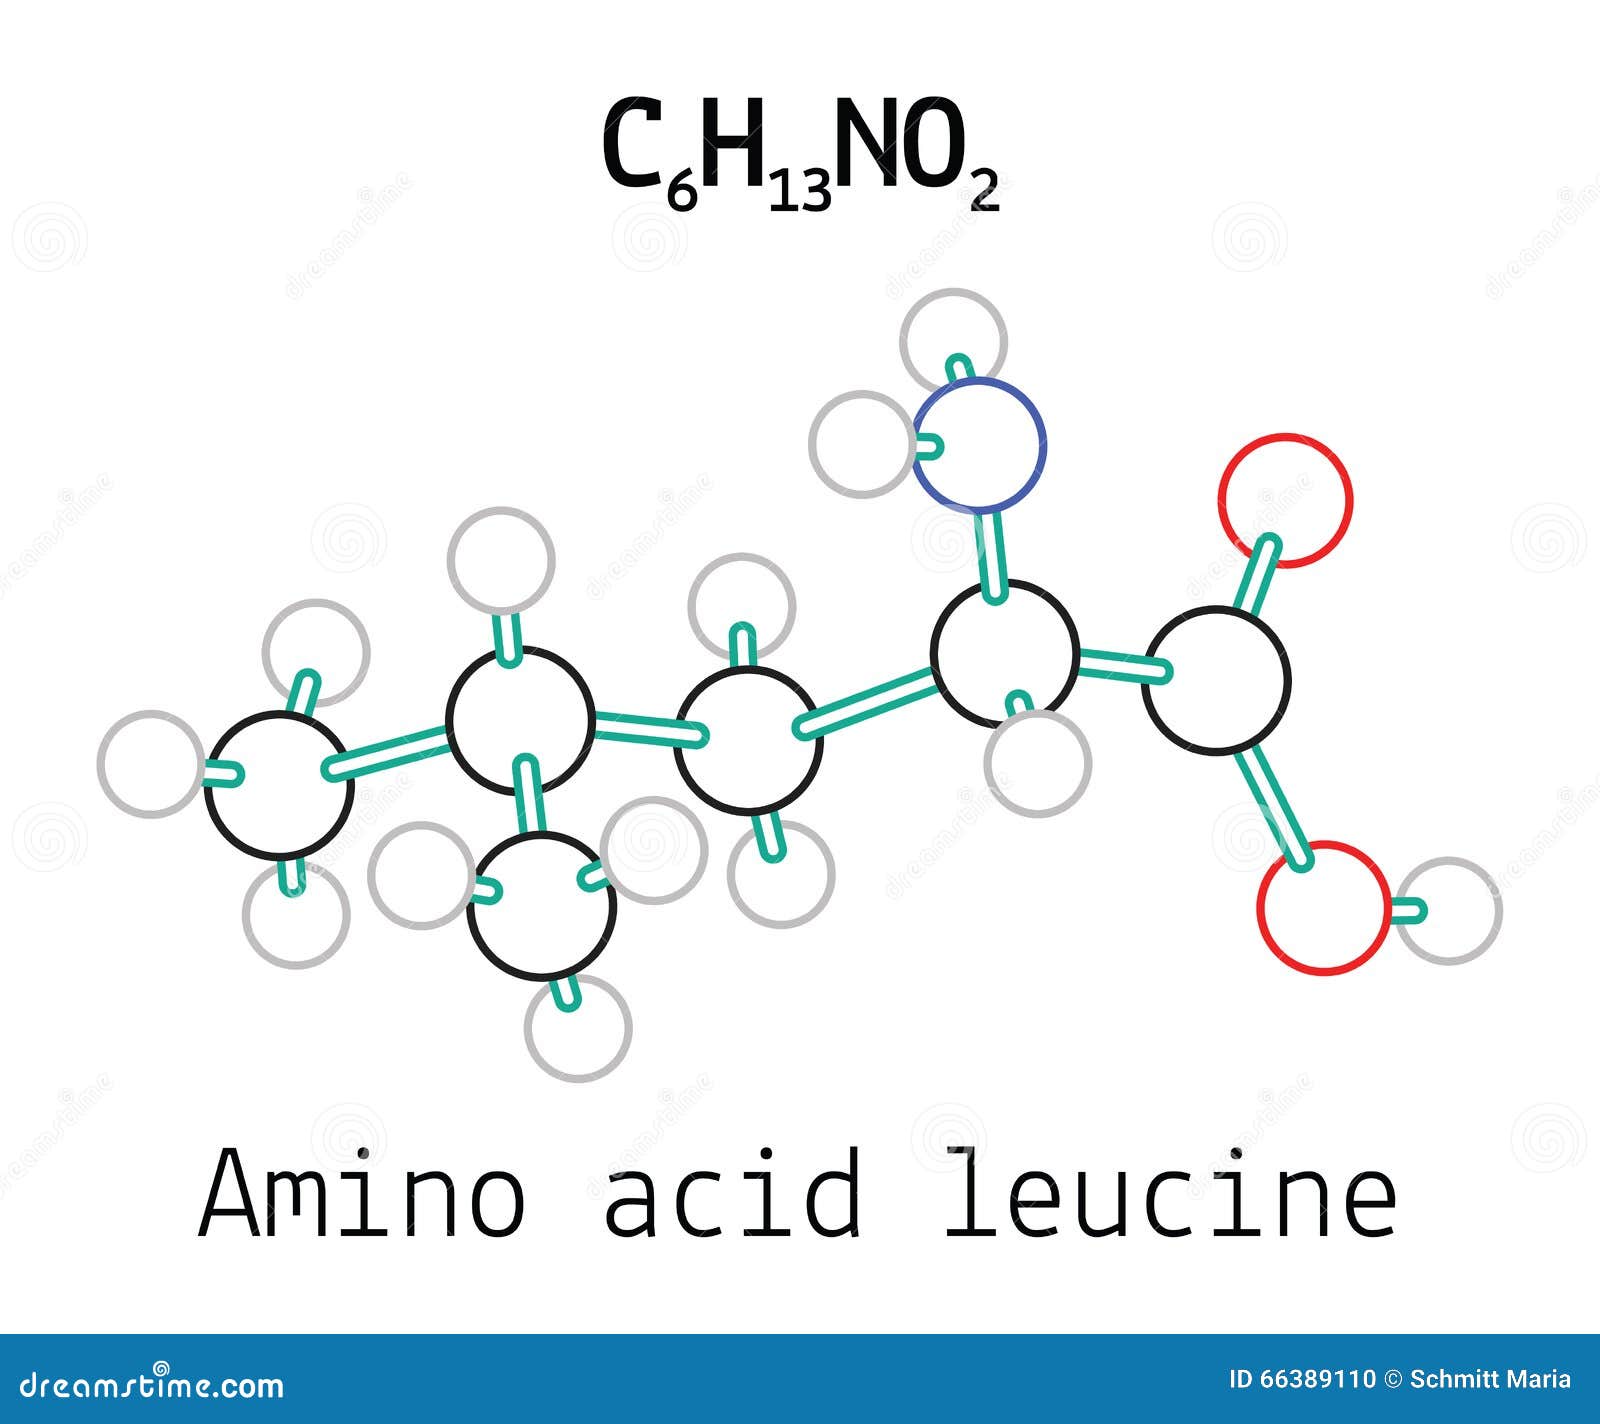 c6h13no2 amino acid leucine molecule